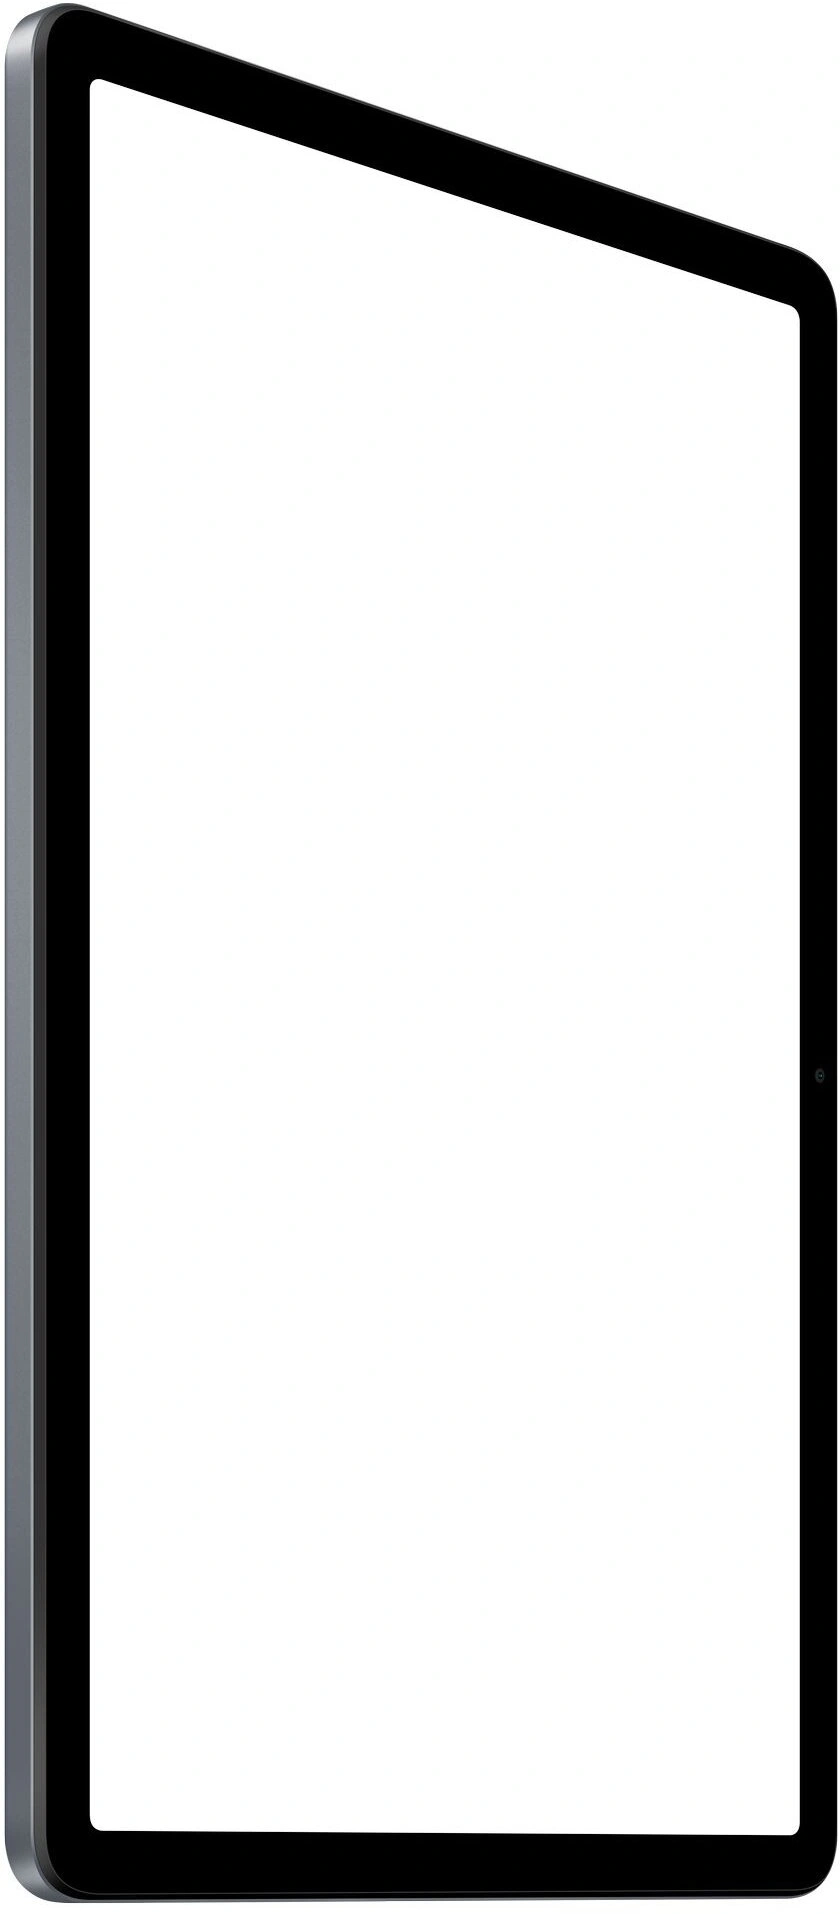  Xiaomi Redmi Pad SE 4/128 GB, Graphite Gray